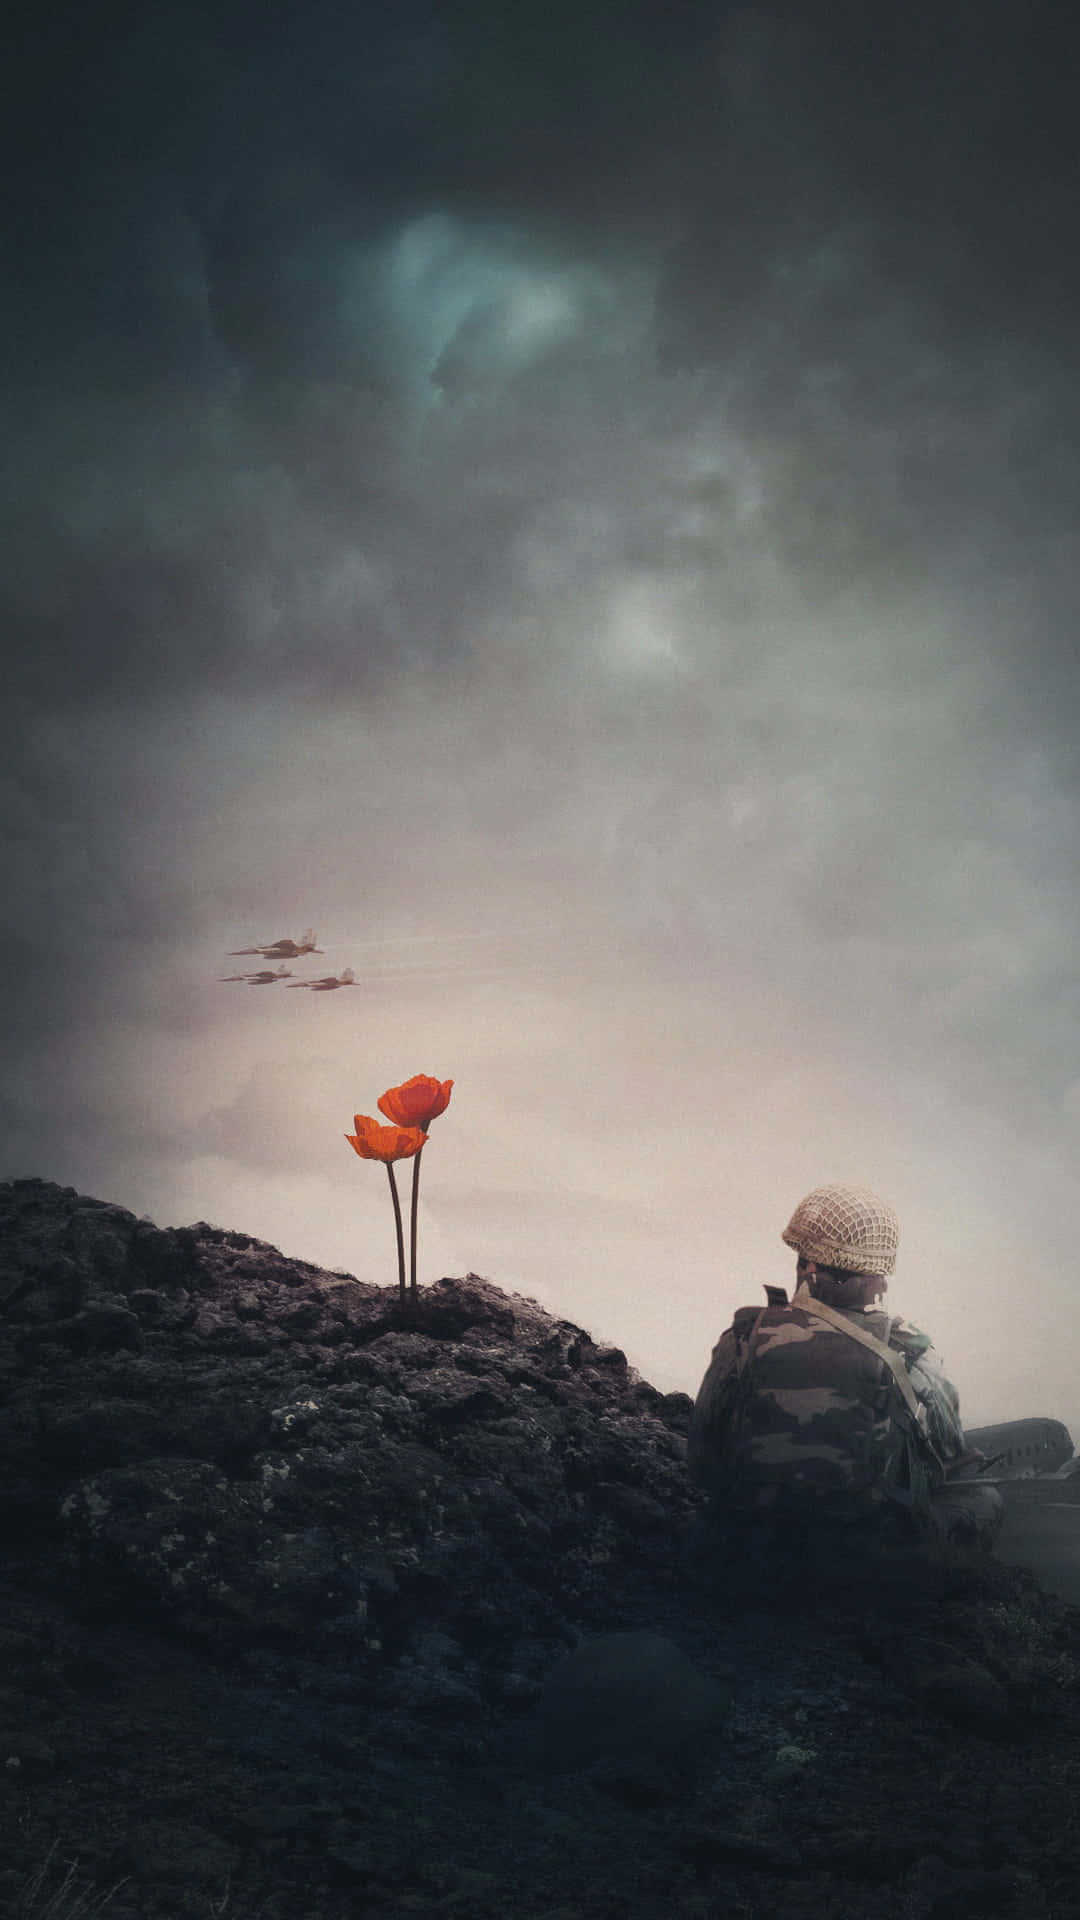 Unsoldado Está Sentado En Una Roca Con Una Flor De Amapola.